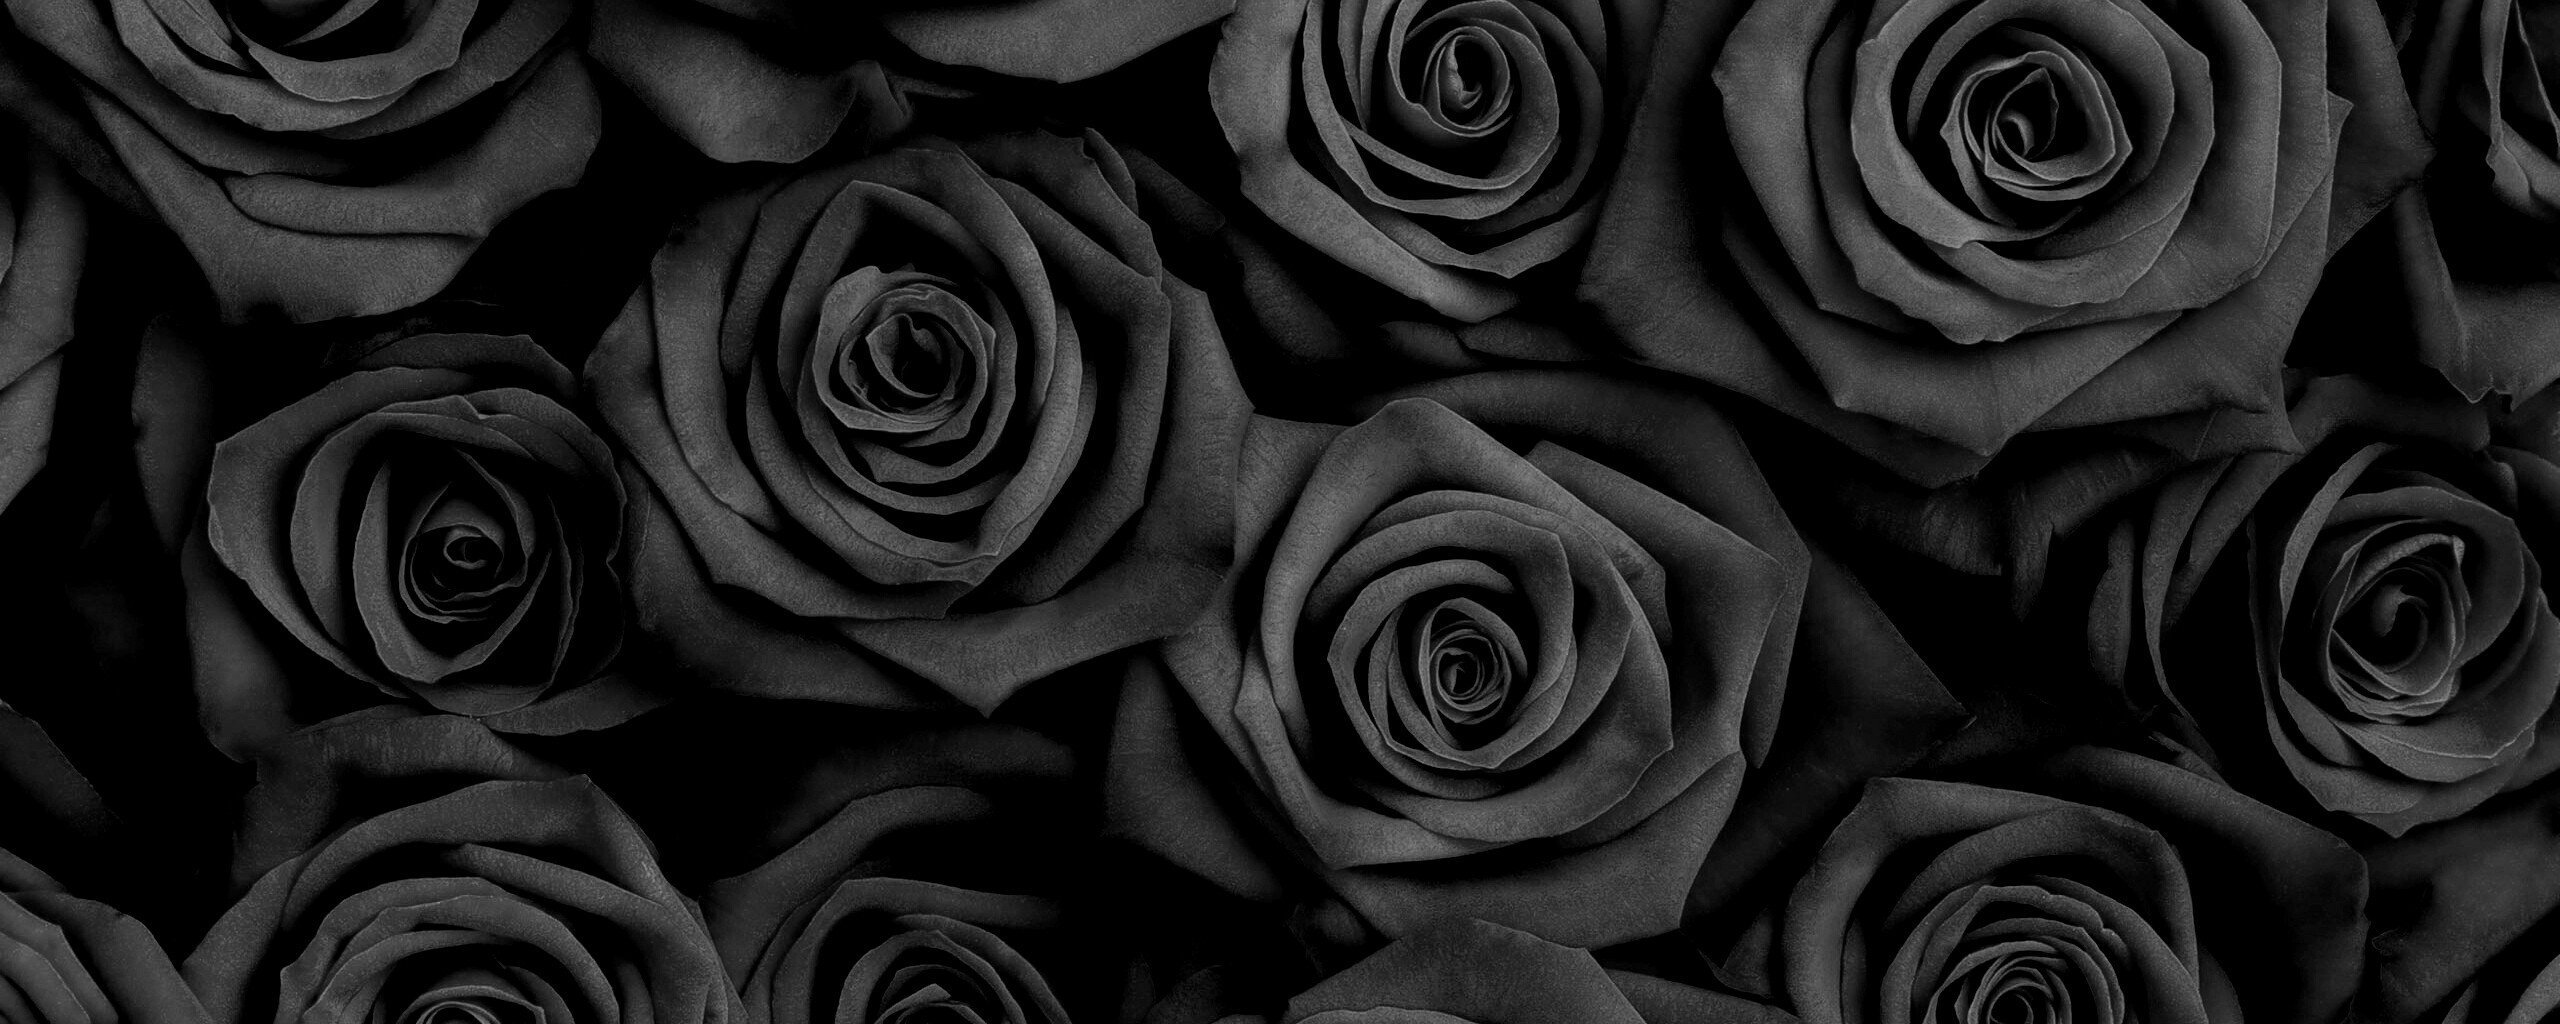 черная роза стим фото 104